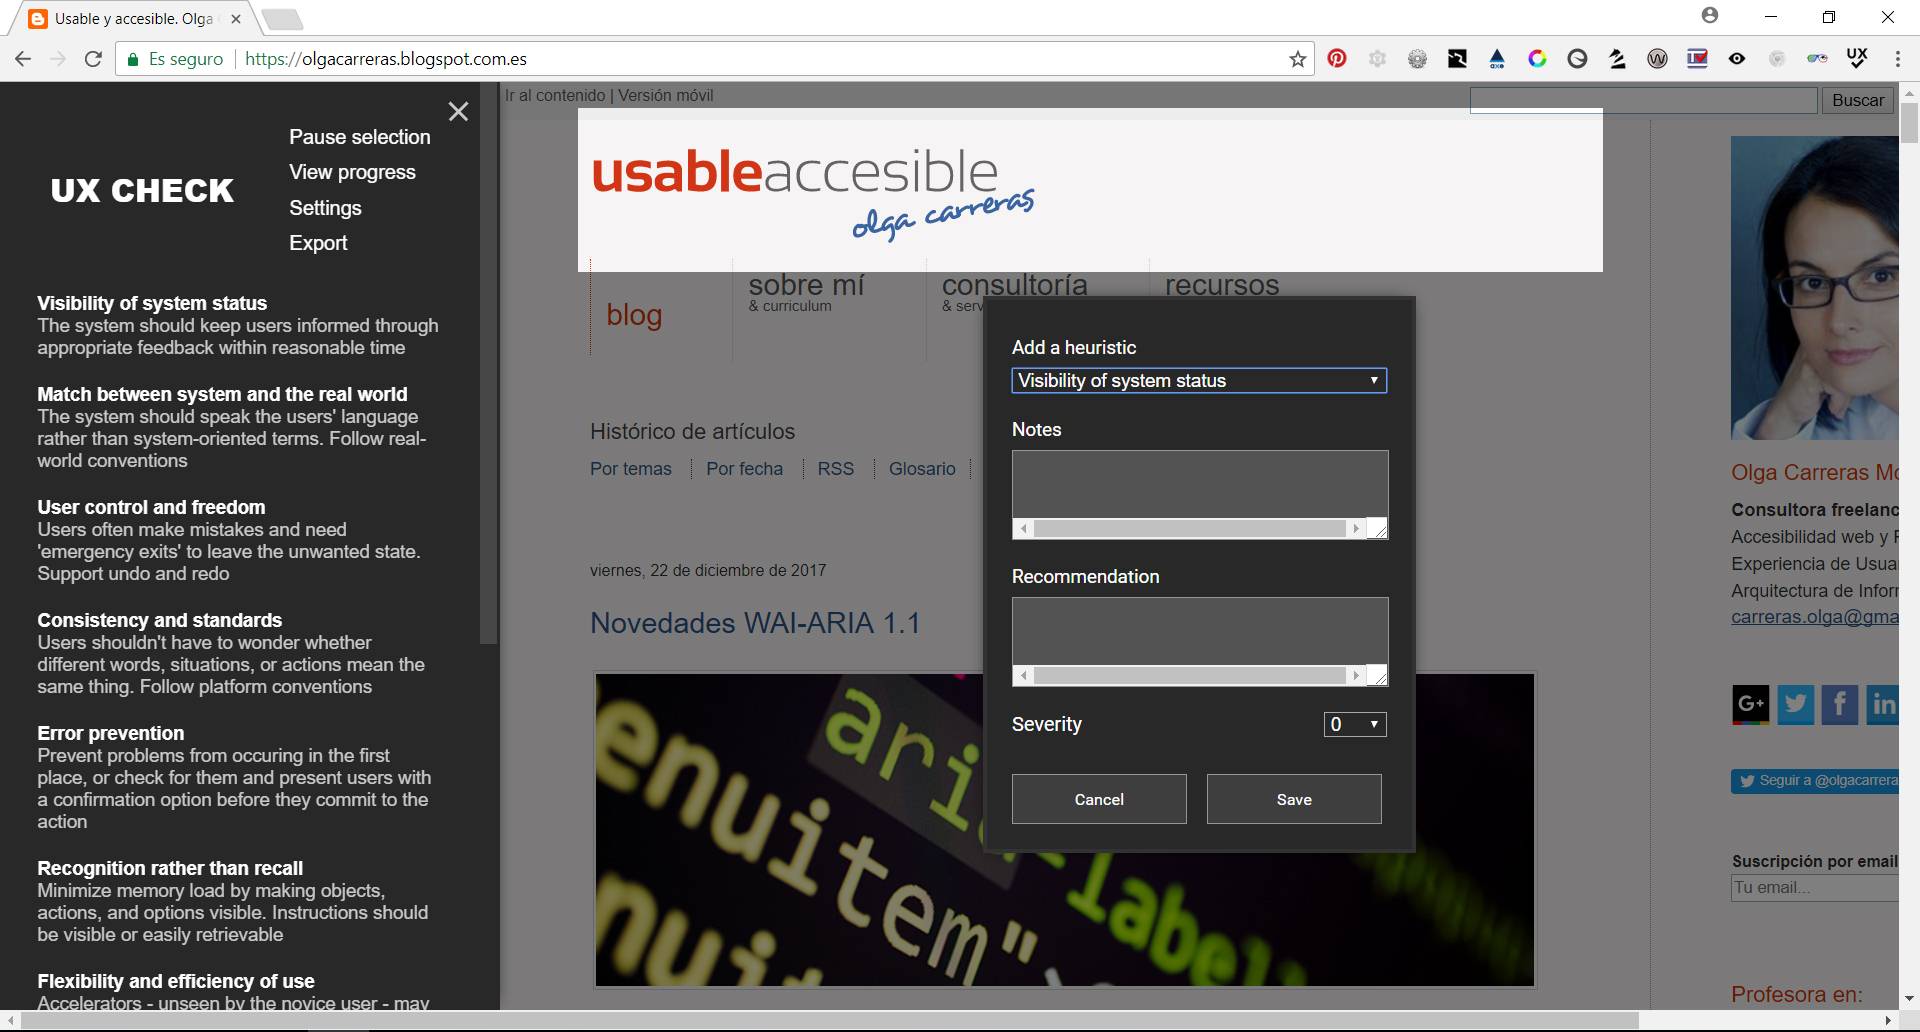 UX Check activado en el navegador. Se ha seleccionado el logotipo de la página web visitada. En una ventana emergente se pueden incluir los campos: Heurística (select), Nota (campo de texto), Recomendaciones (campo de texto), Gravedad (desplegable).